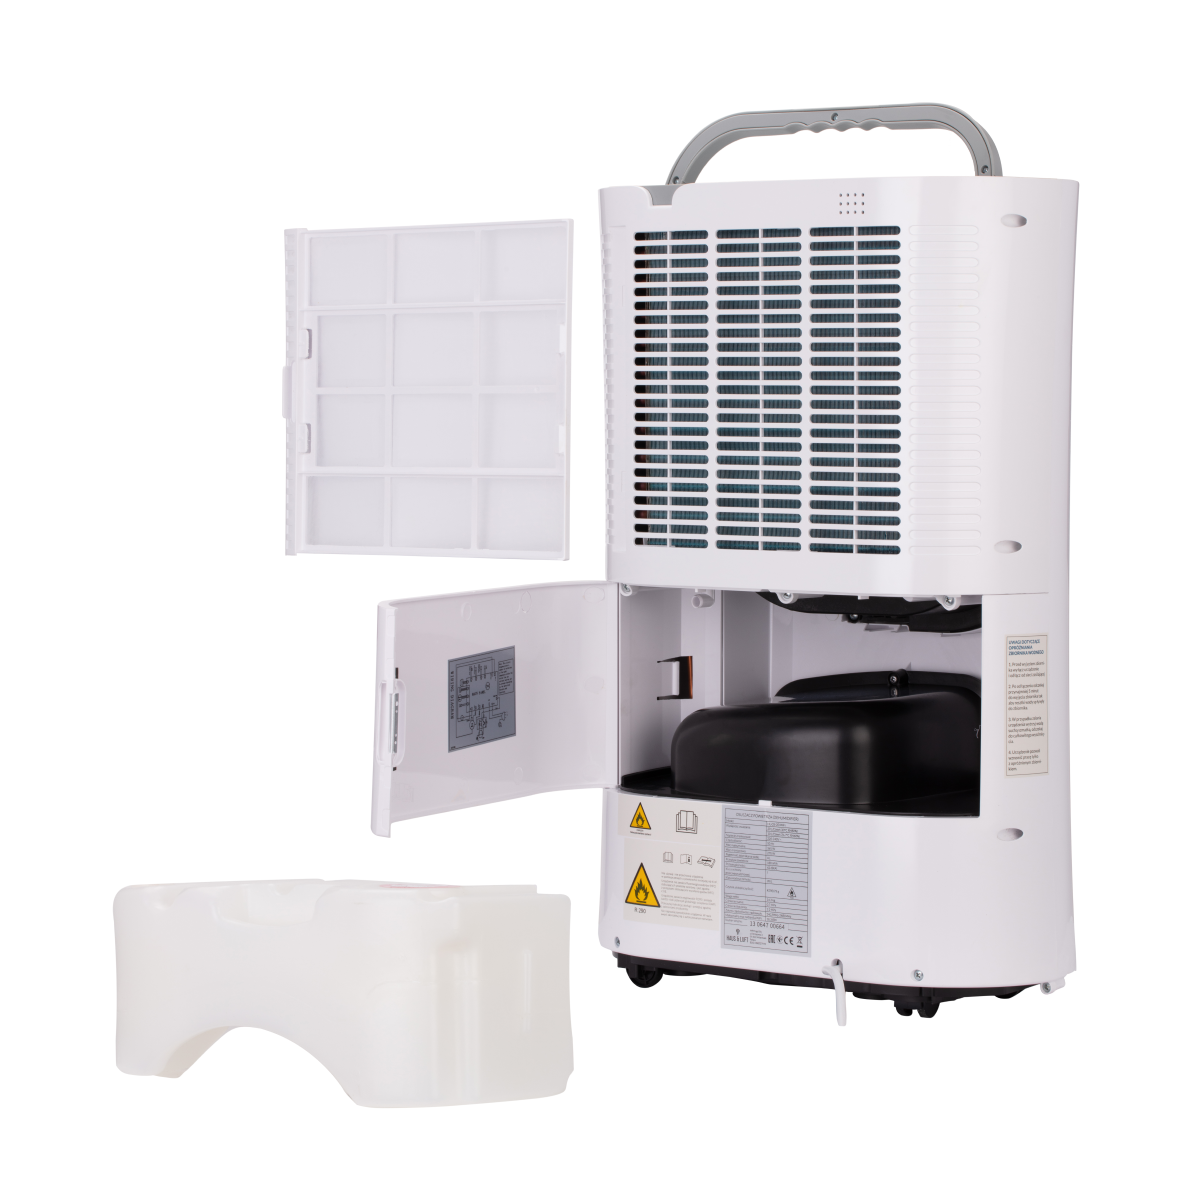 HAUS & LUFT odvlhčovač vzduchu HL-OS-20 WiFi, HL-OS-20/WiFi, 5903151018007, HL-OS-20/WiFi, vlhkosť v interiéri, odstránenie vlhkosti, kvalitný odvlhčovač, vlhkosť domova, elektrický odvlhčovač, odvlhčovanie vzduchu, odvlhčovač pre byty, bezúdržbový odvlhčovač, účinný odvlhčovač vzduchu, odvlhčovač s UV lampou, vnútro